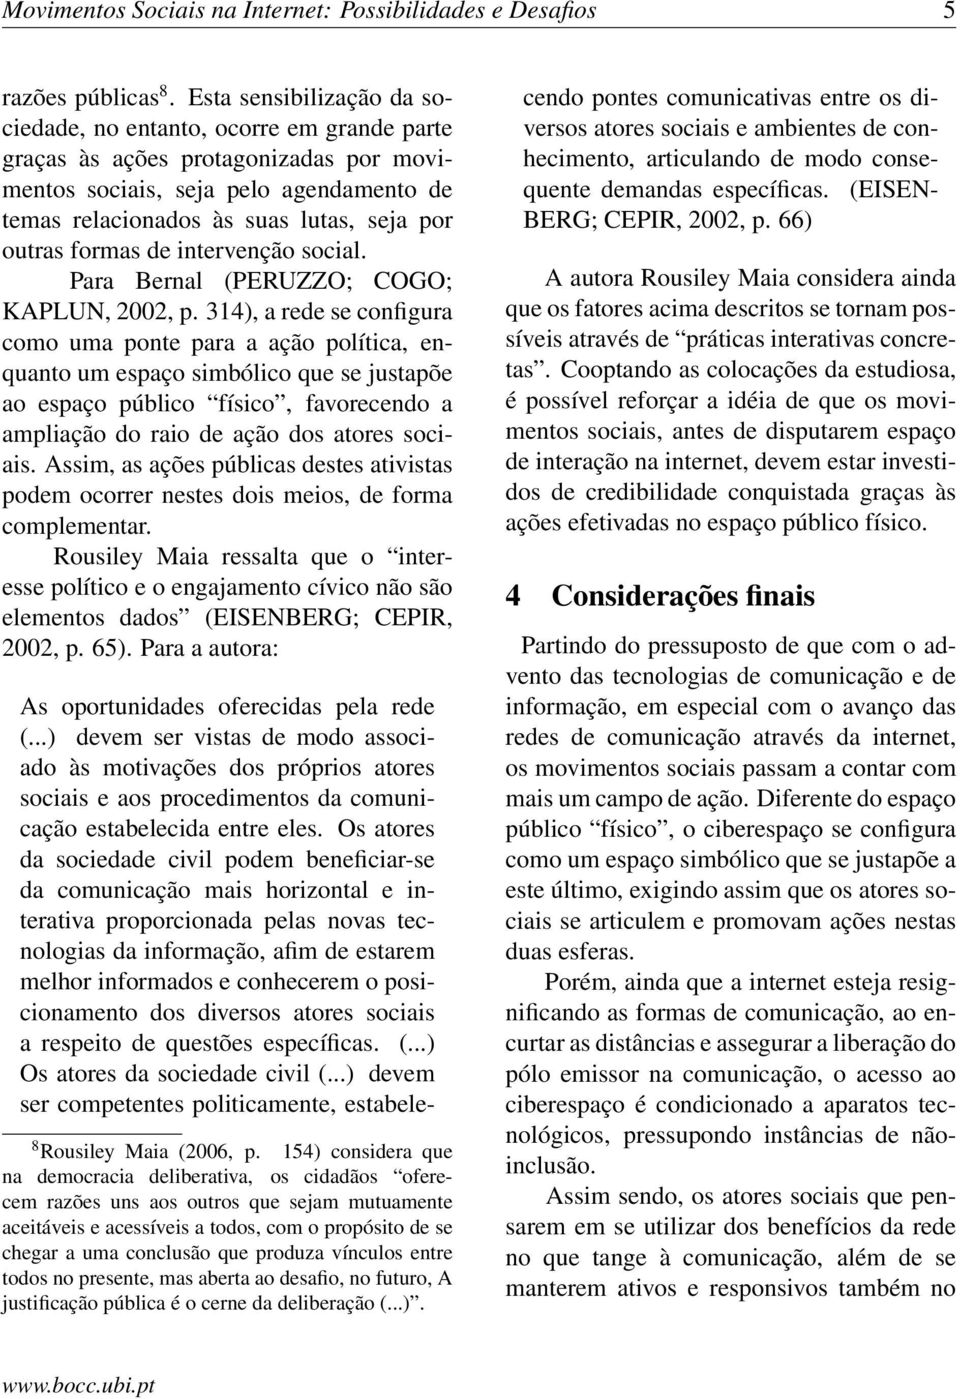 formas de intervenção social. Para Bernal (PERUZZO; COGO; KAPLUN, 2002, p.